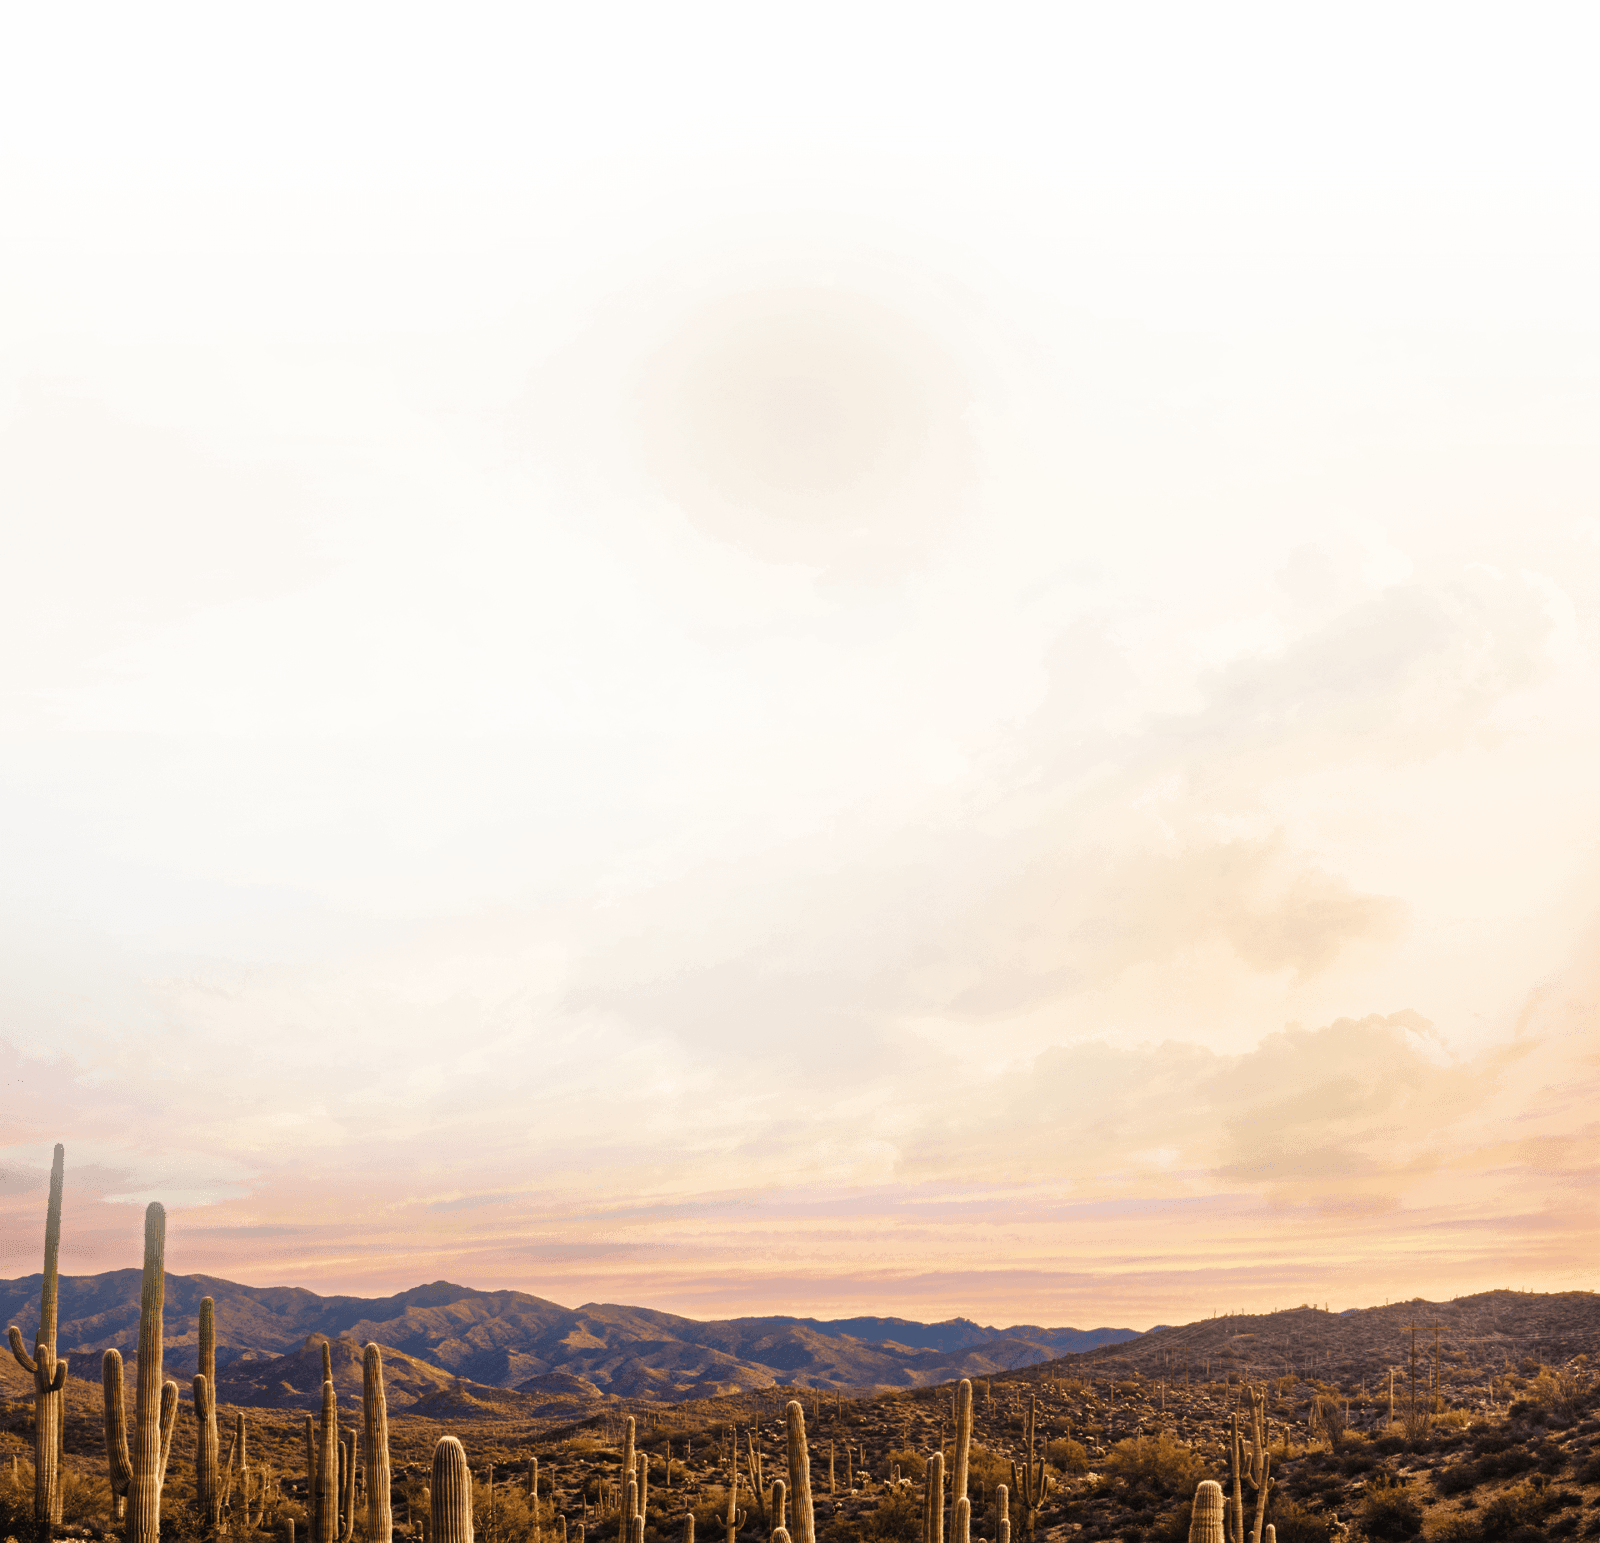 Decorative - desert sky.